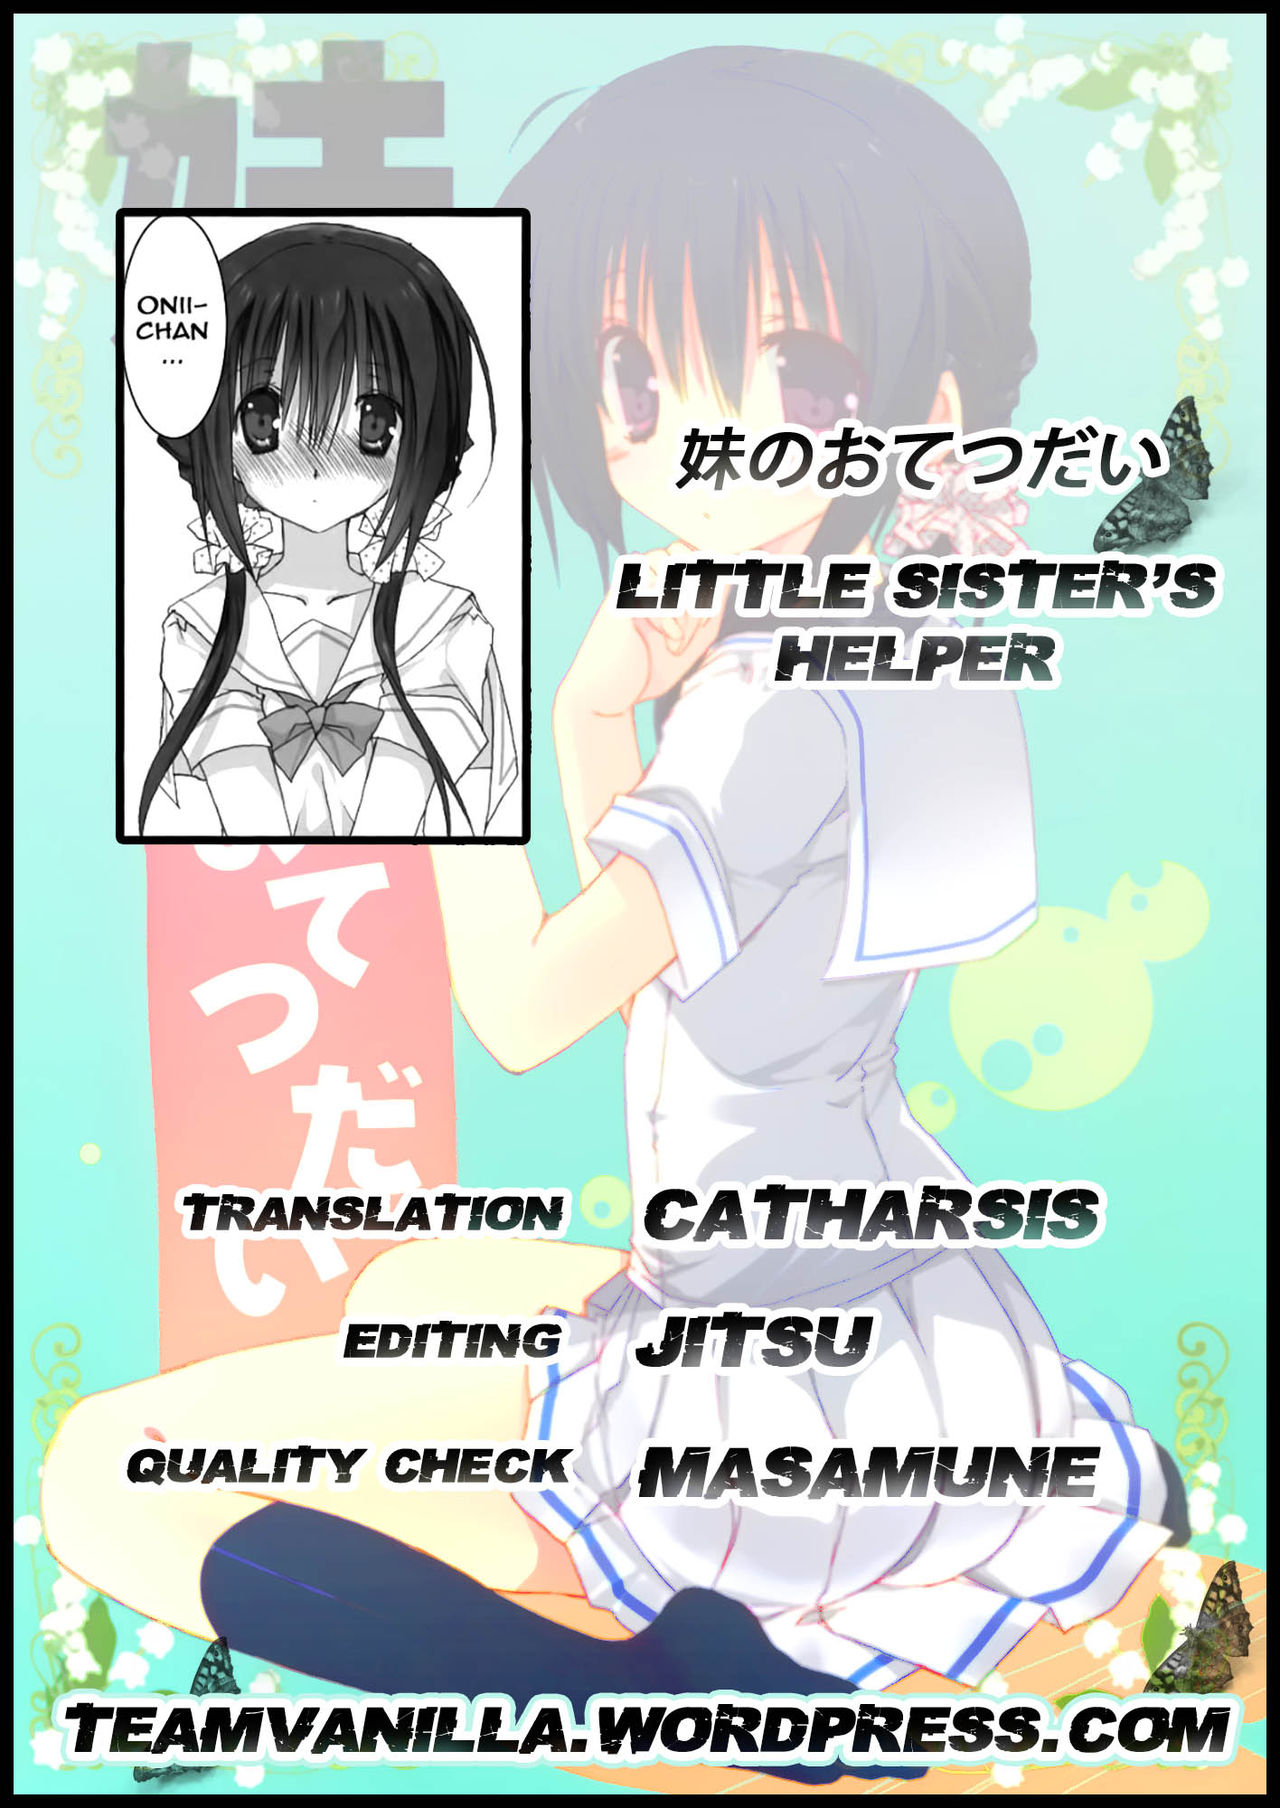 Imouto no Otetsudai  Little Sisters Helper numero d'image 1